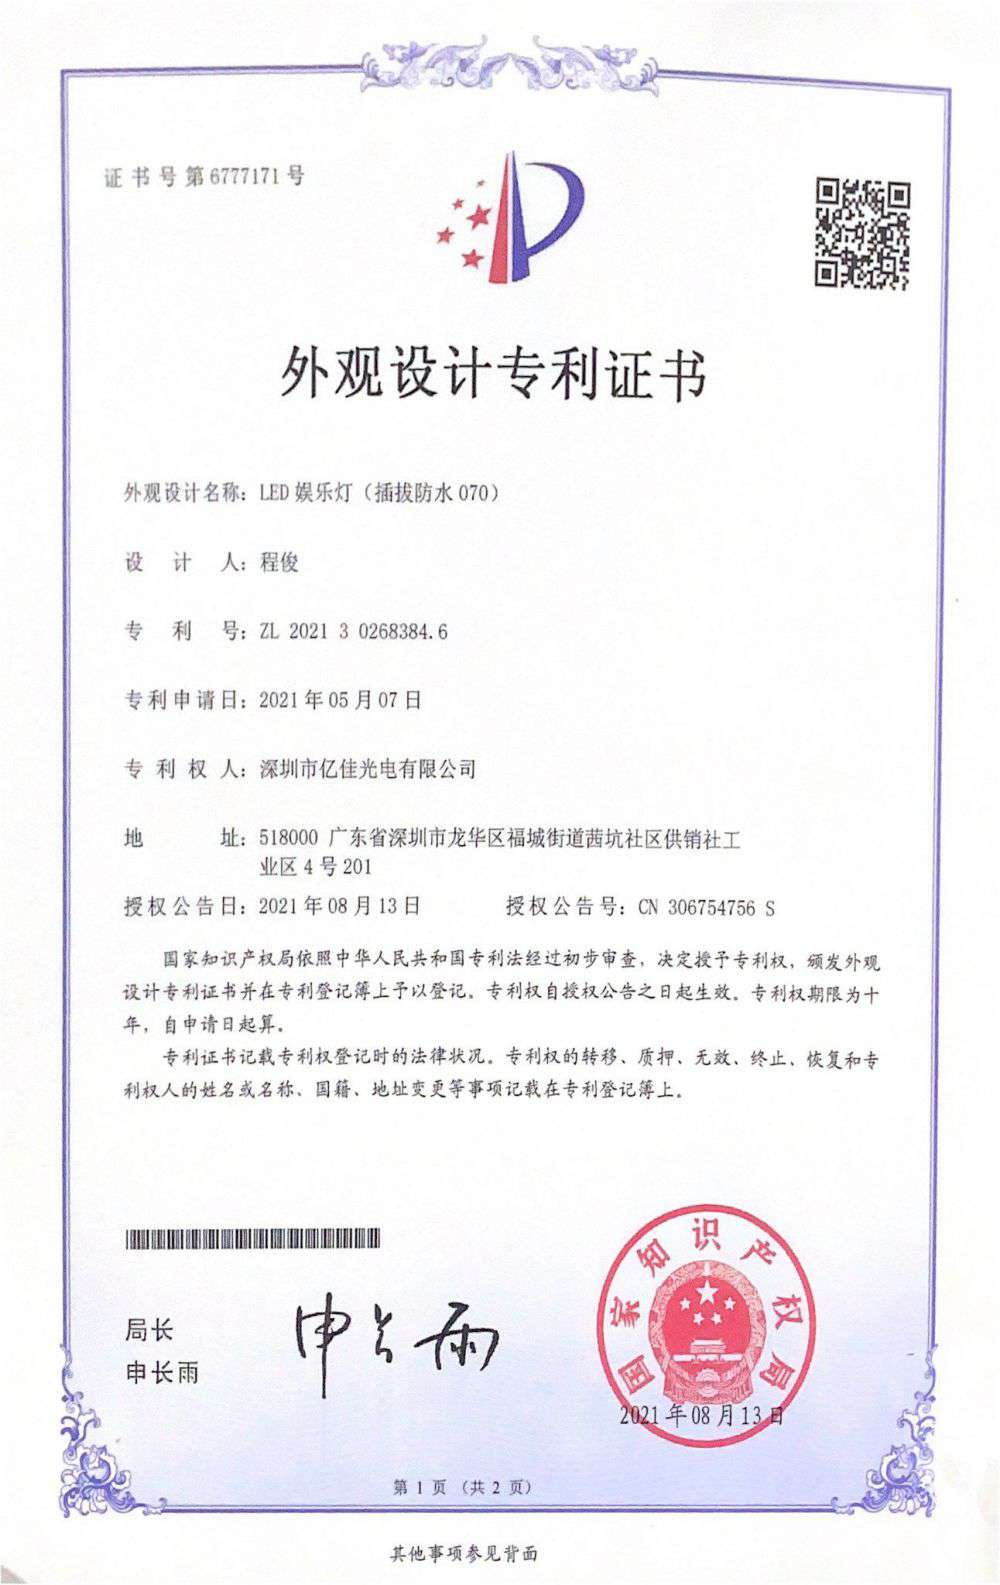 深圳市qy千亿体育光电有限公司LED娱乐灯070获得外观设计专利证书